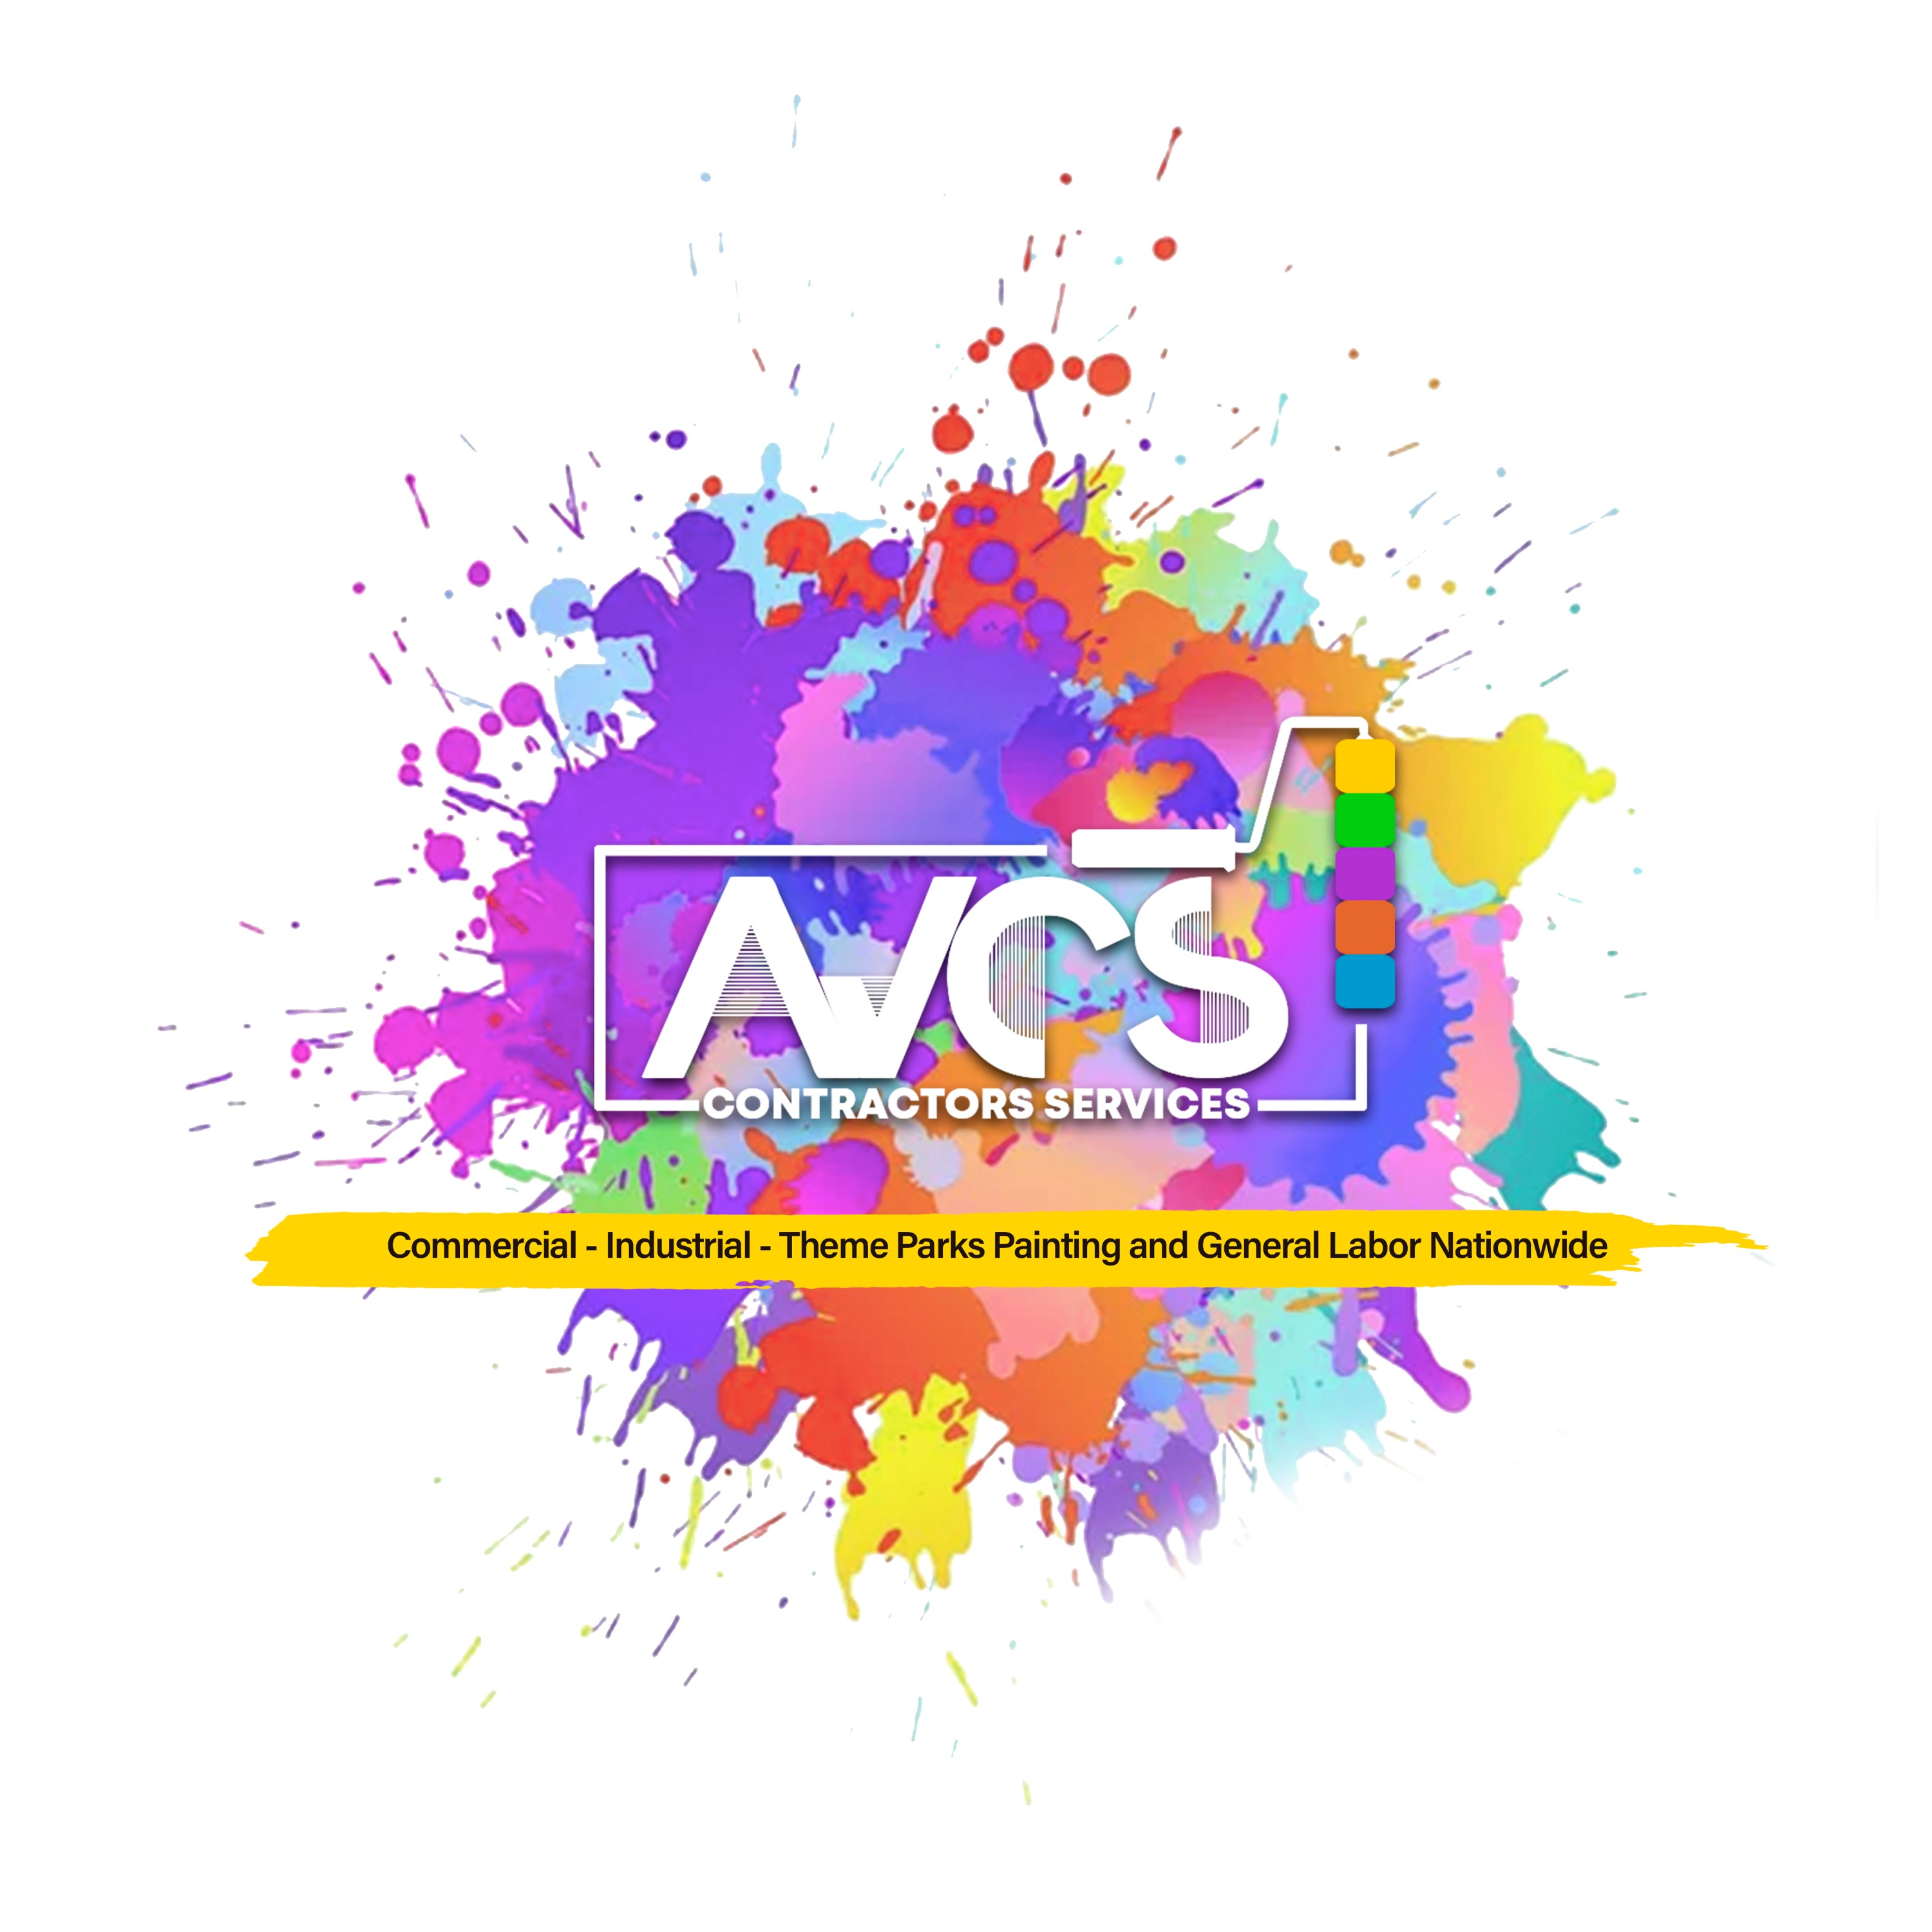 AVCS Contractors Services Logo